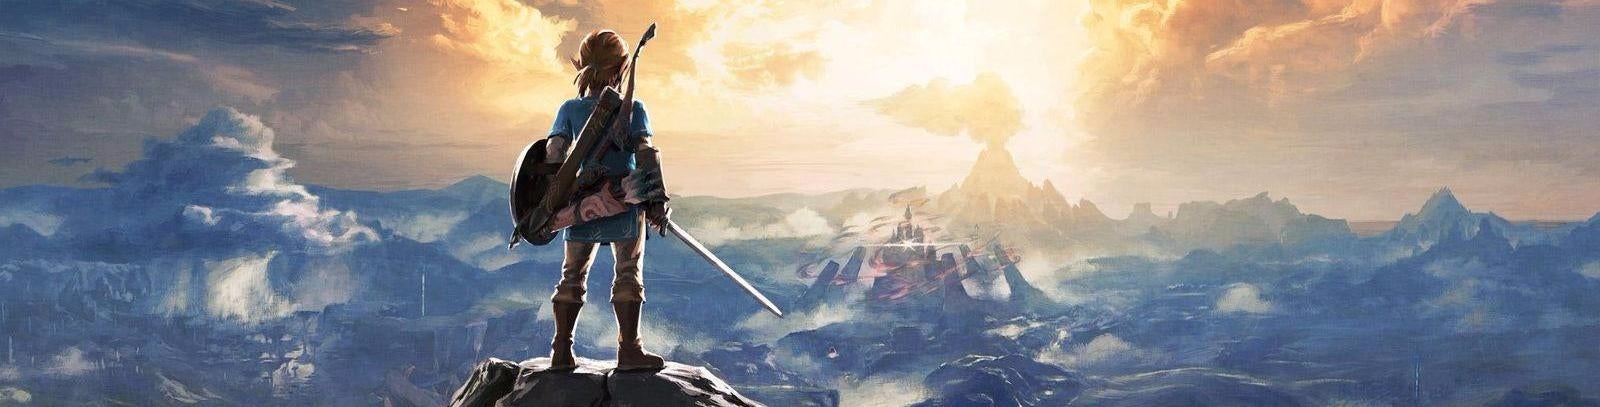 Immagine di Zelda: Breath of the Wild mostra come Nintendo stia imparando dai giochi PC - editoriale